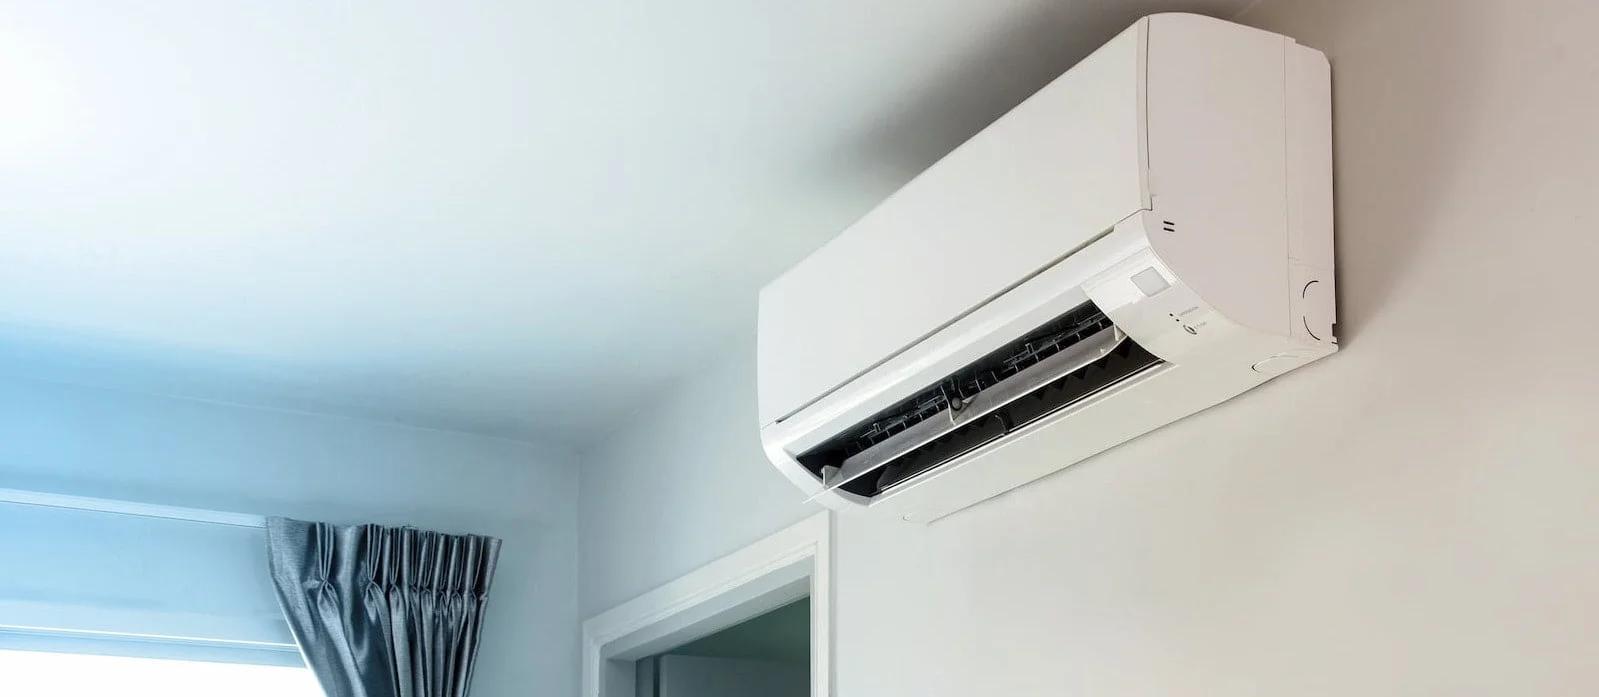 costo de instalacion de sistema de aire acondicionado en ferrocarriles - Cuánto se gasta en instalar un aire acondicionado